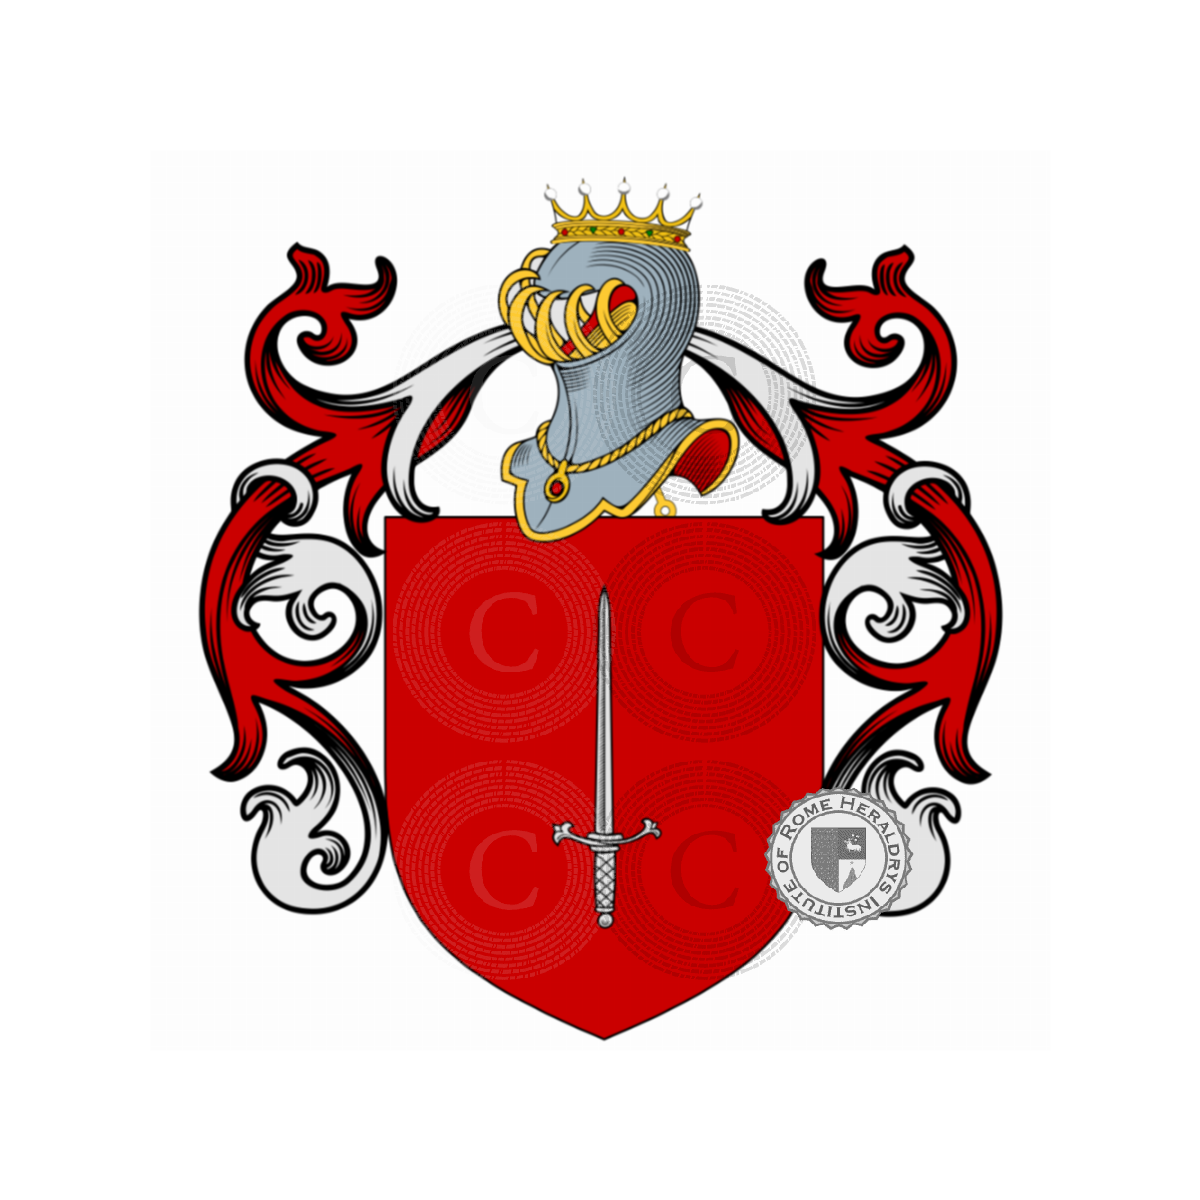 Wappen der FamilieMaestri, de li Maistri,Maistri